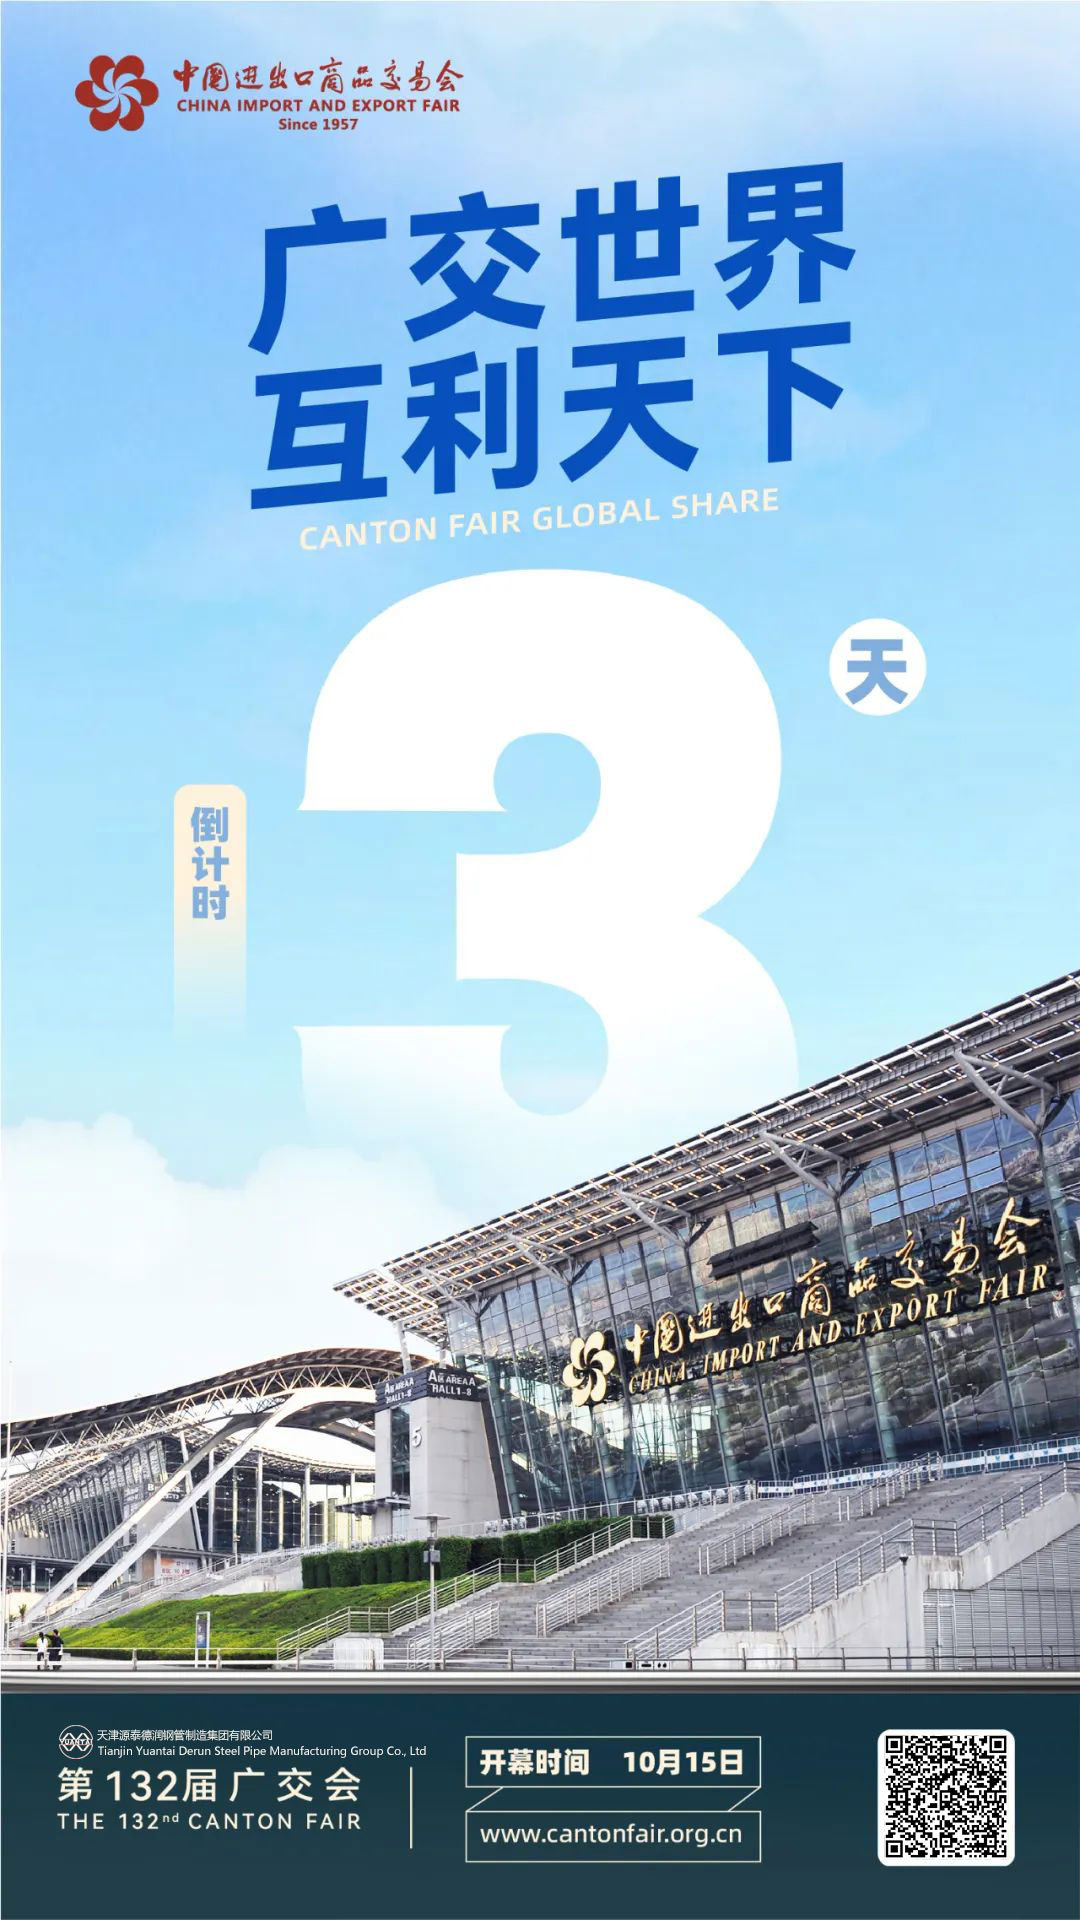 La 132ª Feria de Cantón entró en la cuenta regresiva durante tres días.-Tianjin yuantaiderun Steel Tube Manufacturing Group Co., Ltd.